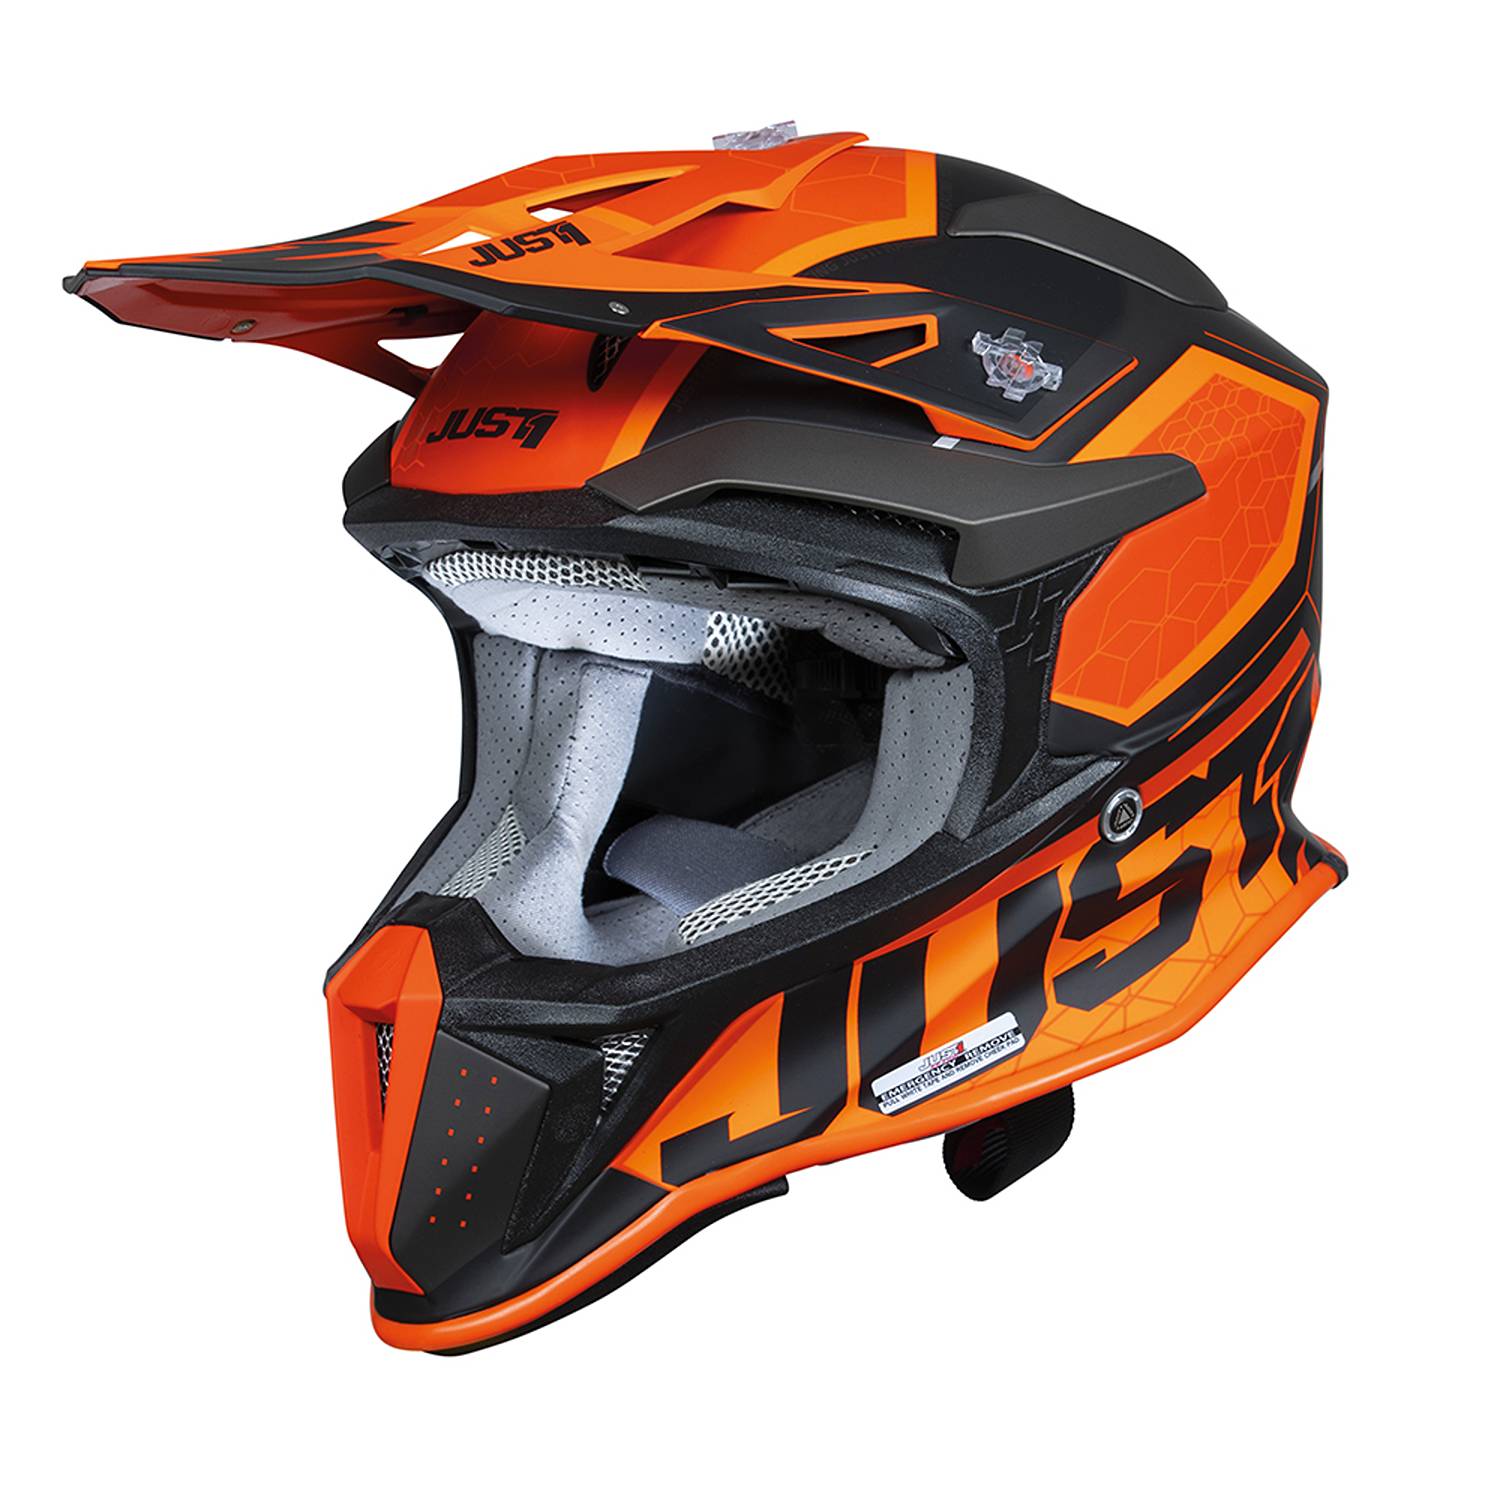 Image of Just1 J18-F Hexa Orange Black Matt Offroad Helmet Size L ID 8055774027359